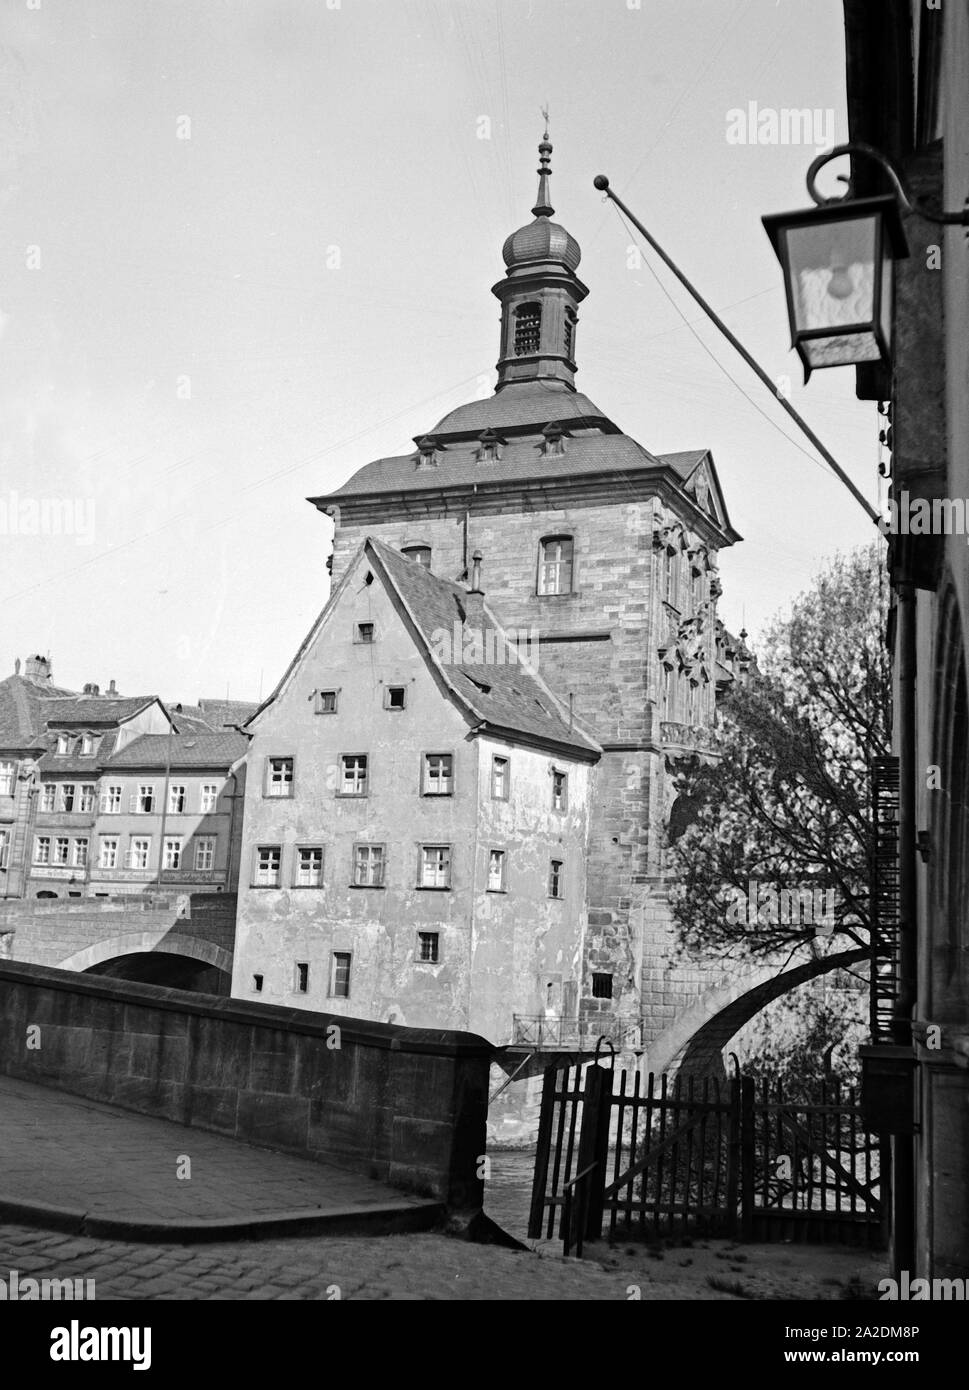 Das alte Rathaus auf der Brücke über die Regnitz a Bamberg, Deutschland 1930er Jahre. Il vecchio Municipio presso il ponte sul fiume Regnitz a Bamberg, Germania 1930s. Foto Stock